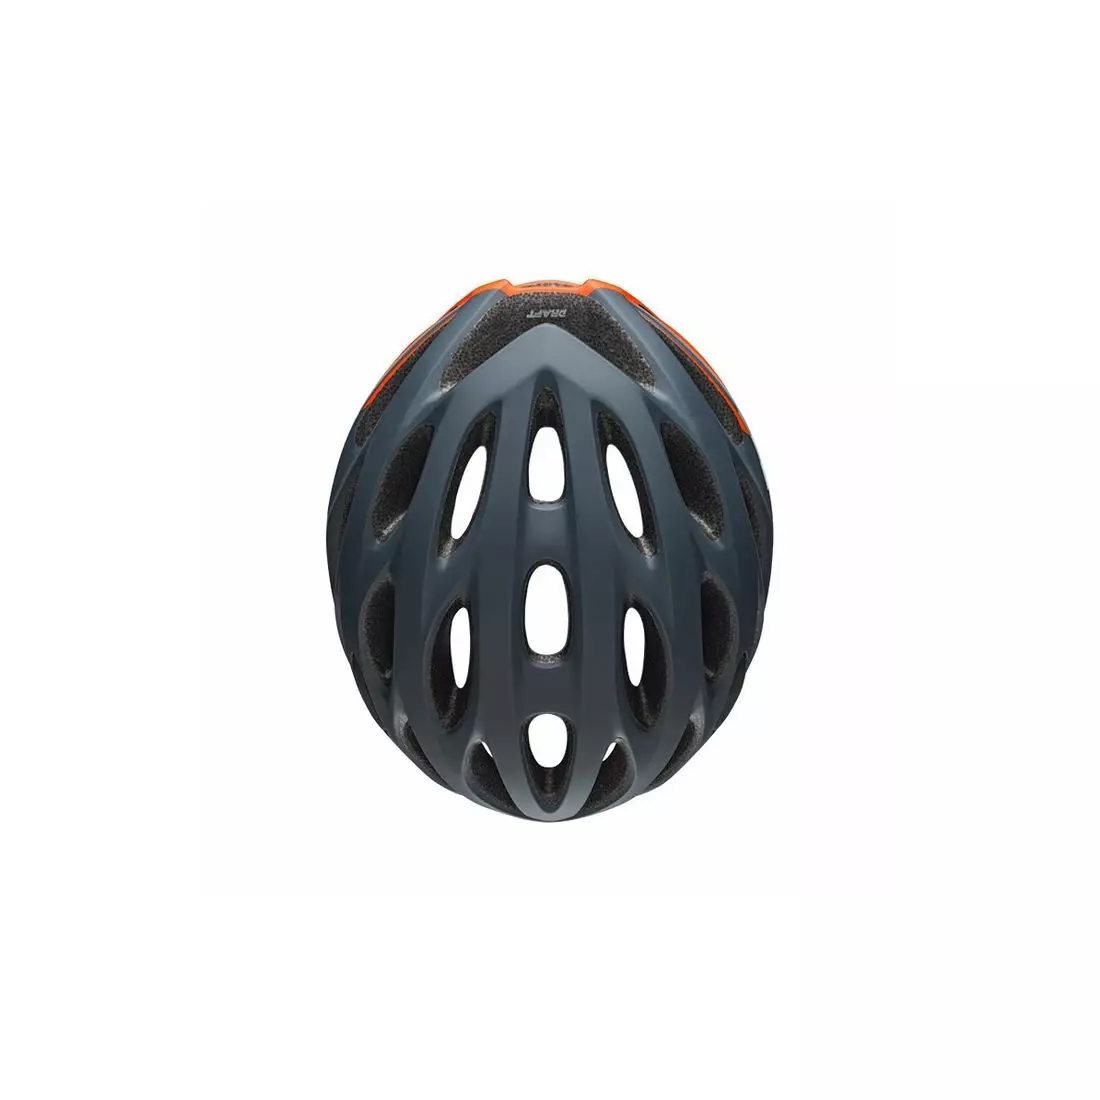 Bicycle road helmet BELL DRAFT speed matte slate gray orange 